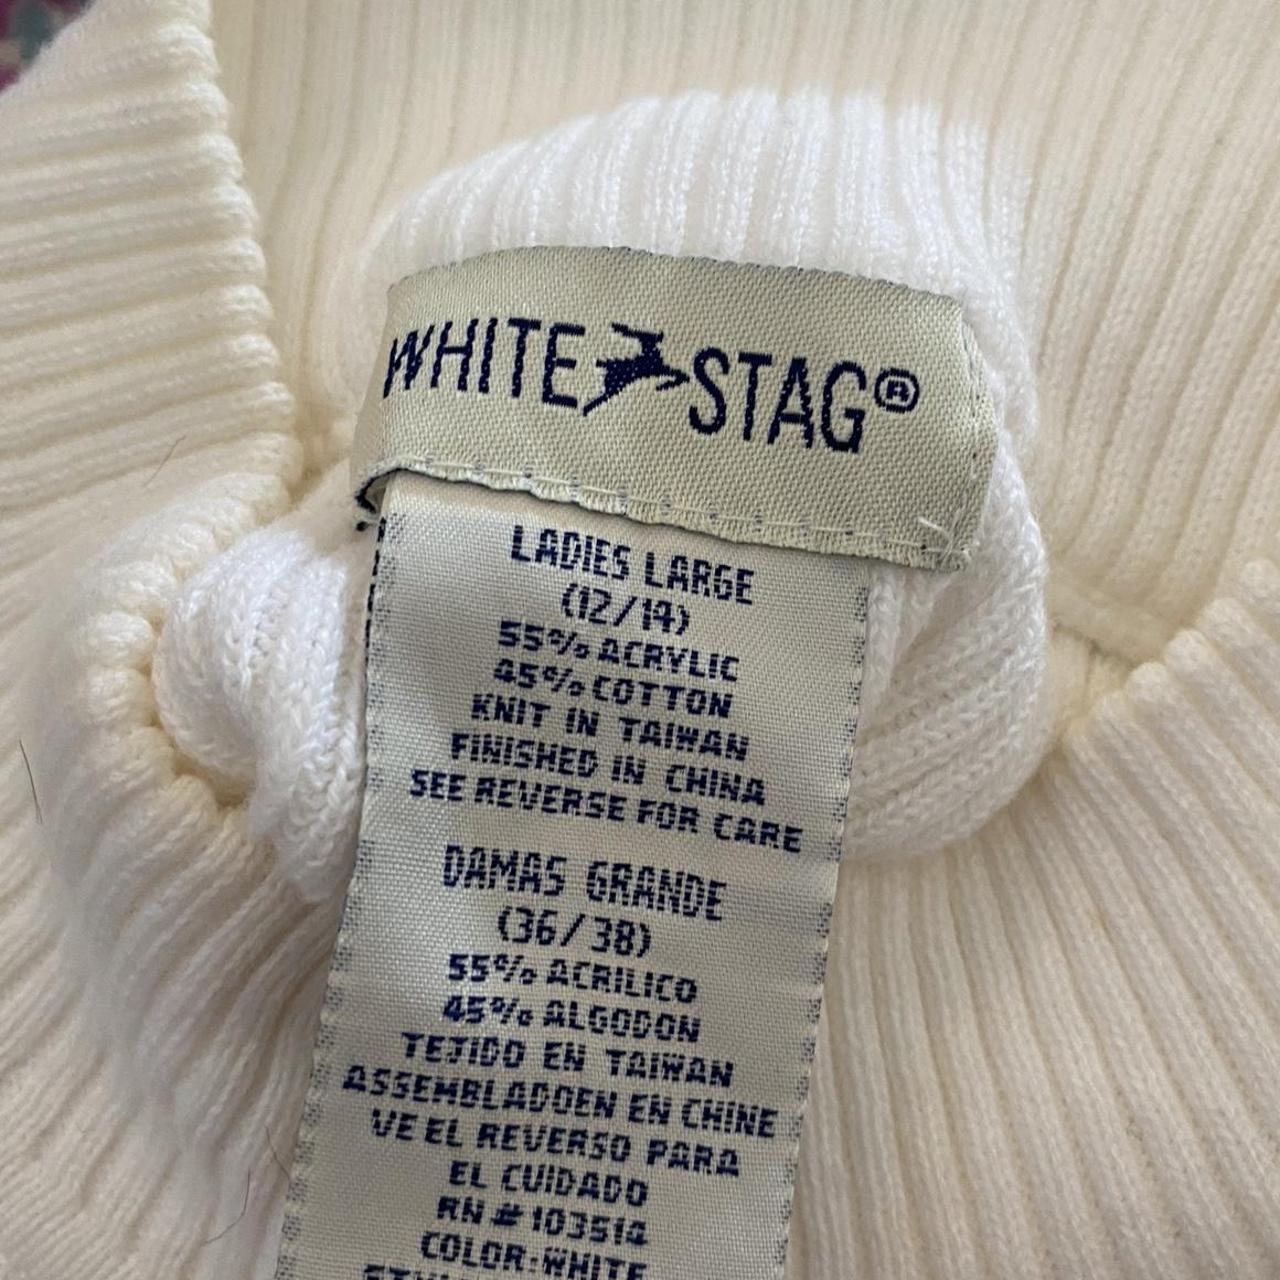 White Stag Women's White Vest | Depop